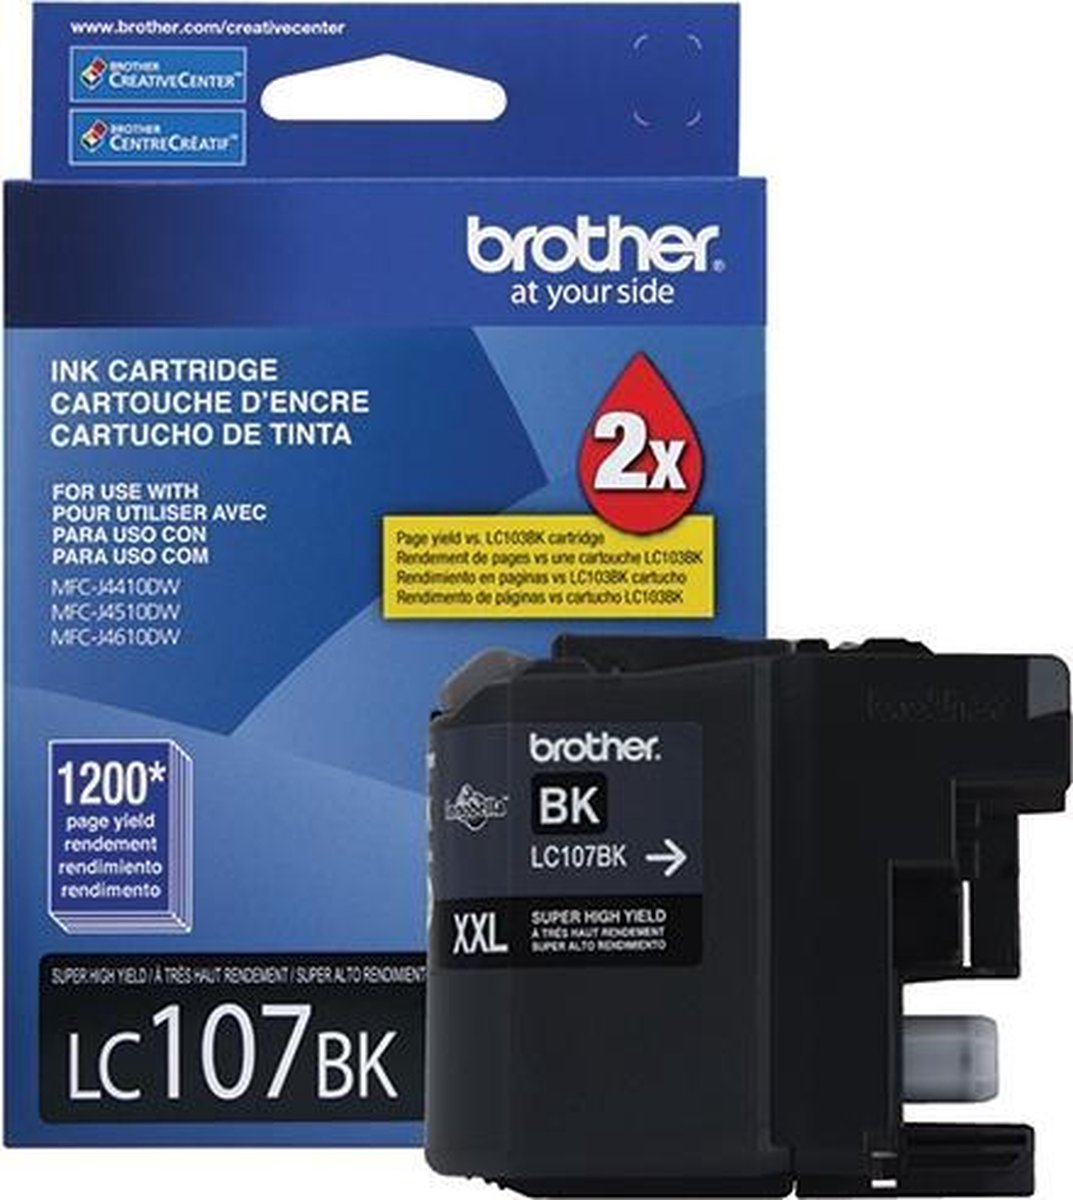 Brother LC107BK inktcartridge 1 stuk(s) Origineel Hoog (XL) rendement Foto zwart